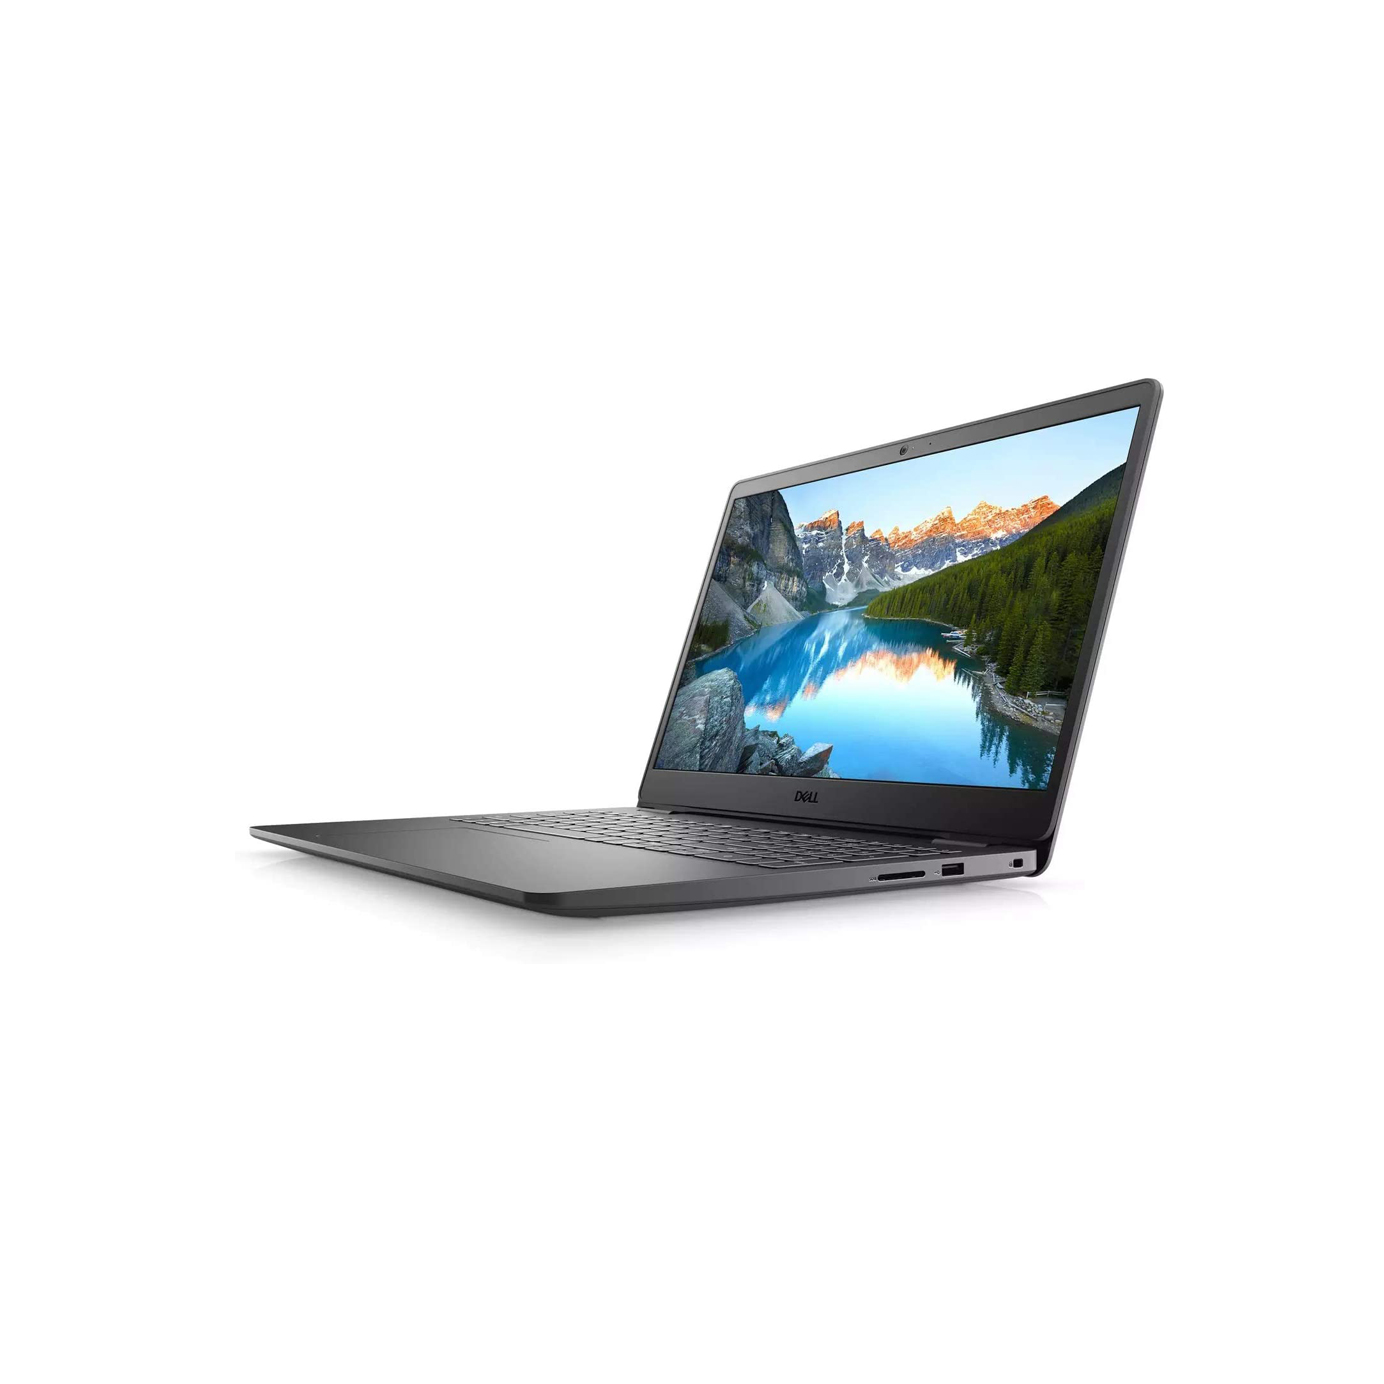 Laptop Dell Inspiron 3501 Core i5-1135G7 / RAM 12GB / SSD 256GB / Full HD / Windows 10 / Nhám - Hàng Nhập Khẩu Mỹ